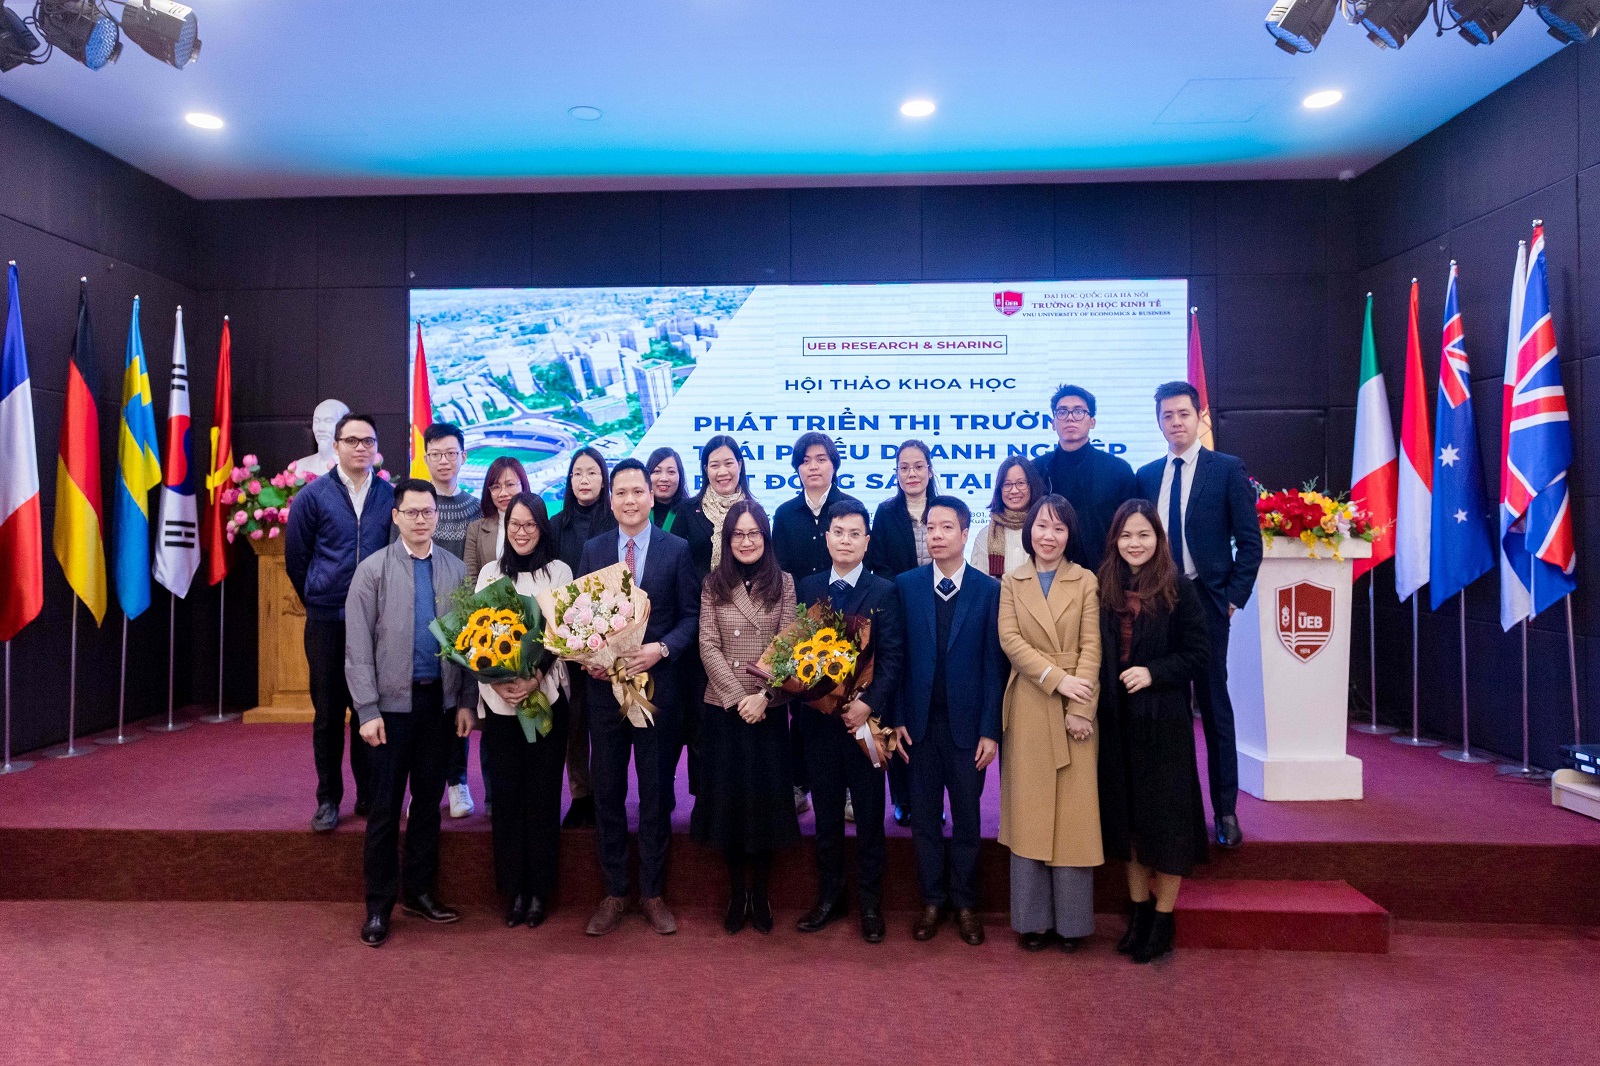 UEB tổ chức Hội thảo Khoa học “Phát triển Thị trường trái phiếu bất động sản tại Việt Nam”